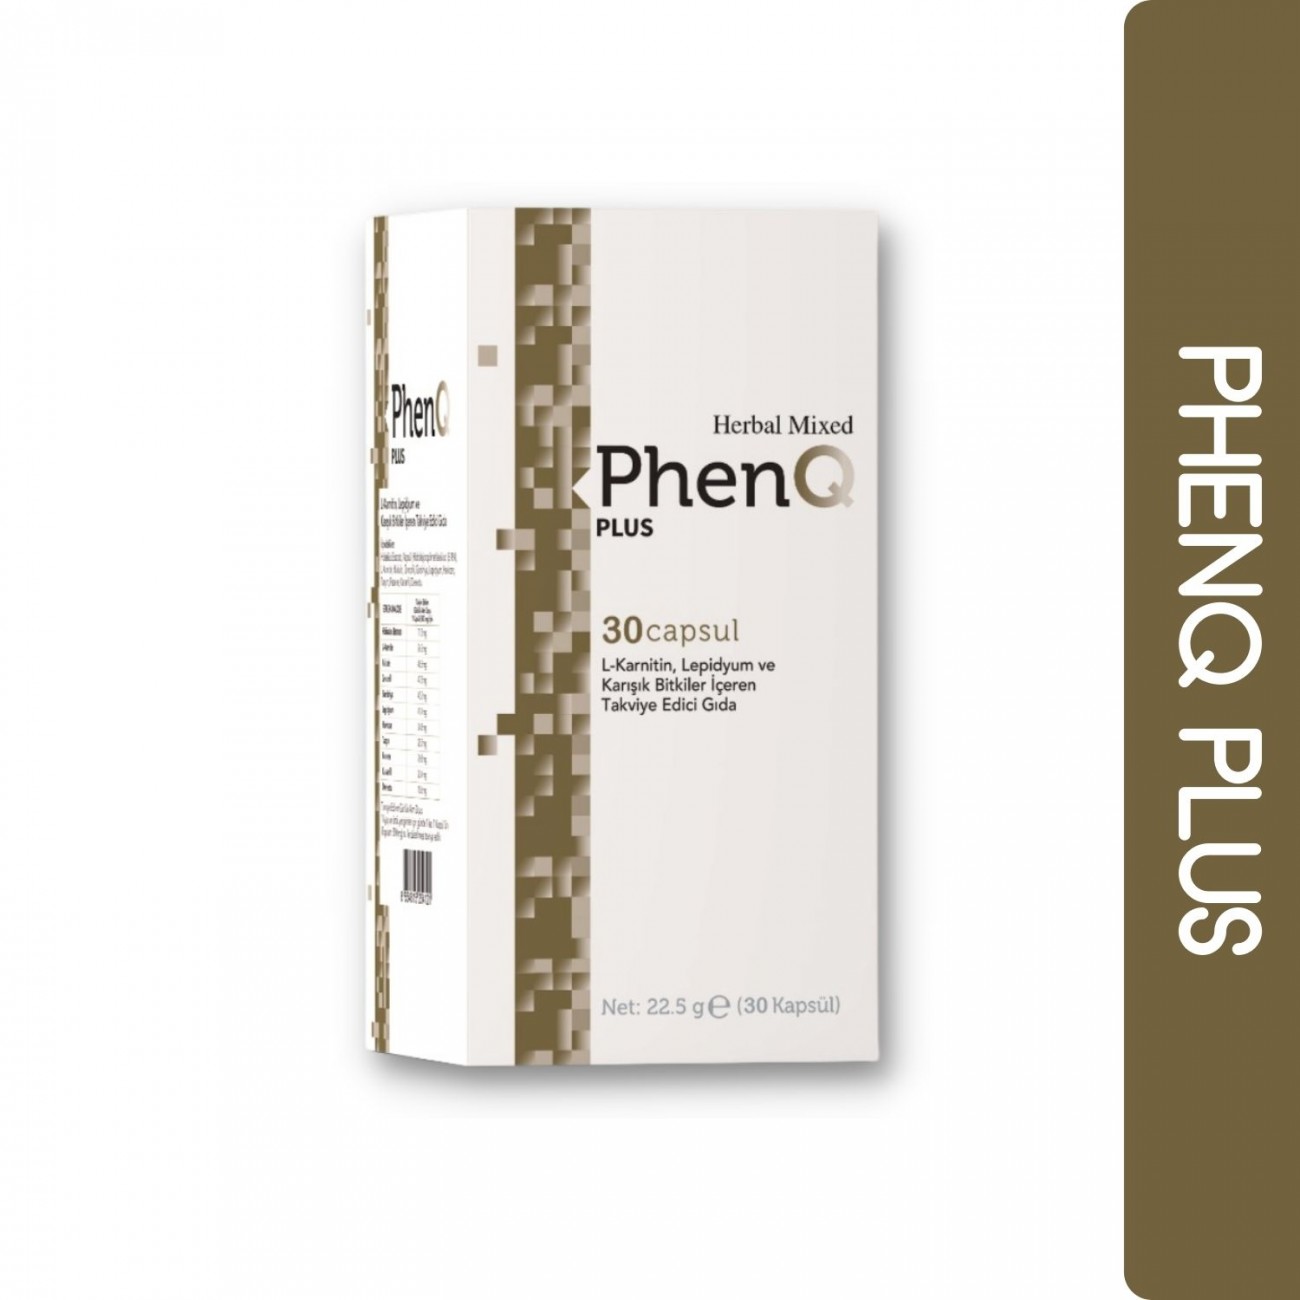 PhenQ Plus Zayıflamaya Yardımcı Takviye Edici Gıda 2 Kutu 60 Kapsül ( 2X30 Kapsül)